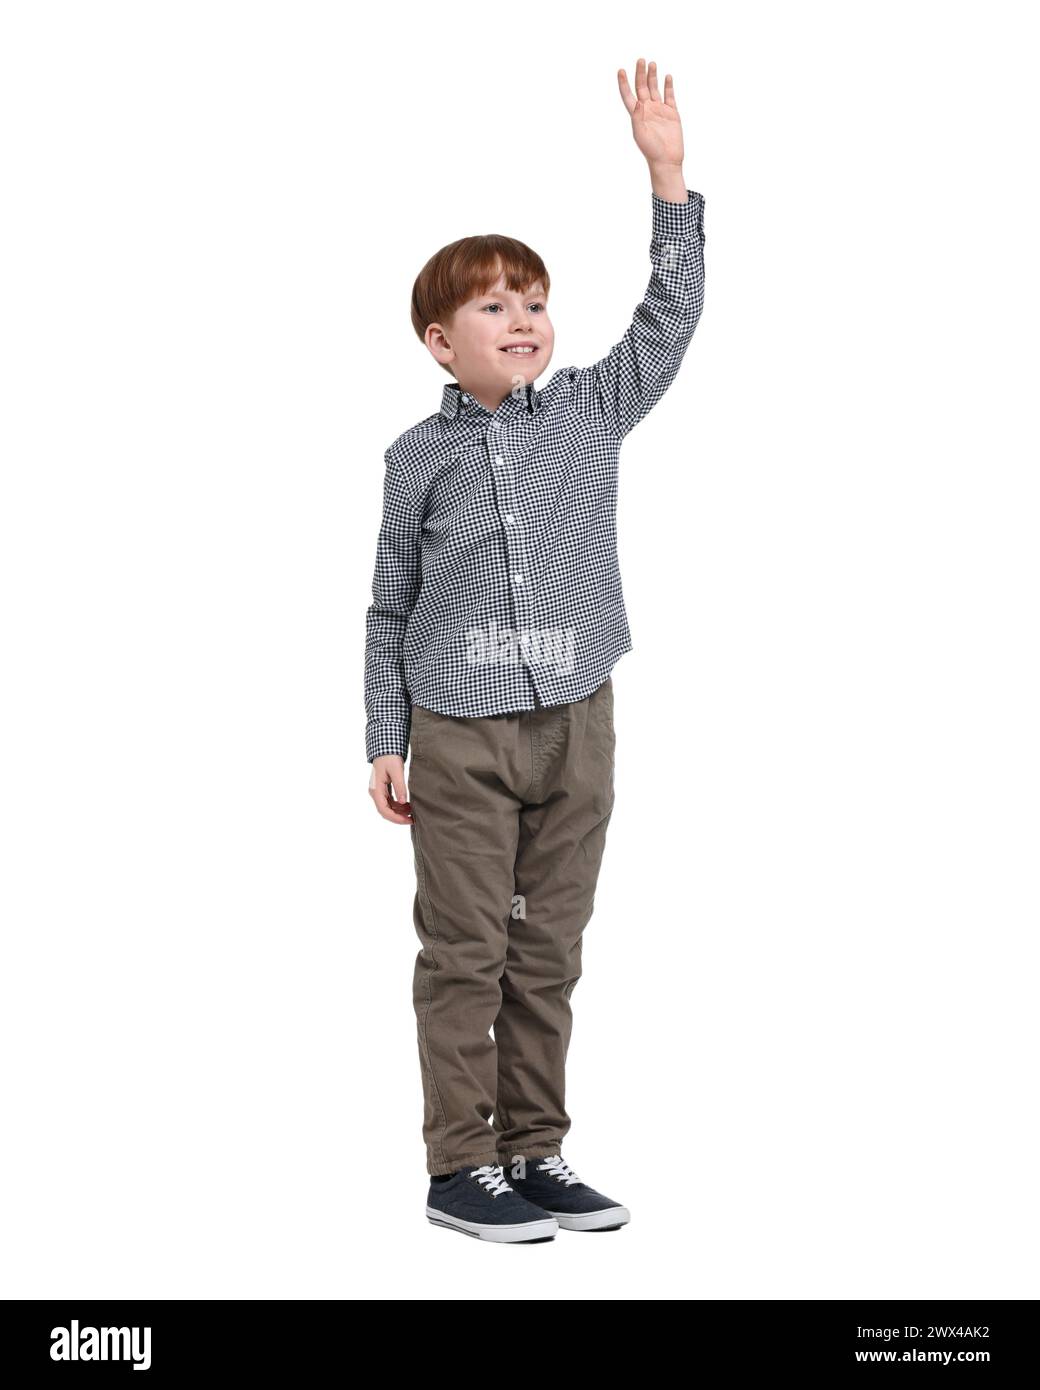 Niño pequeño sonriente agitando la mano sobre fondo blanco Foto de stock